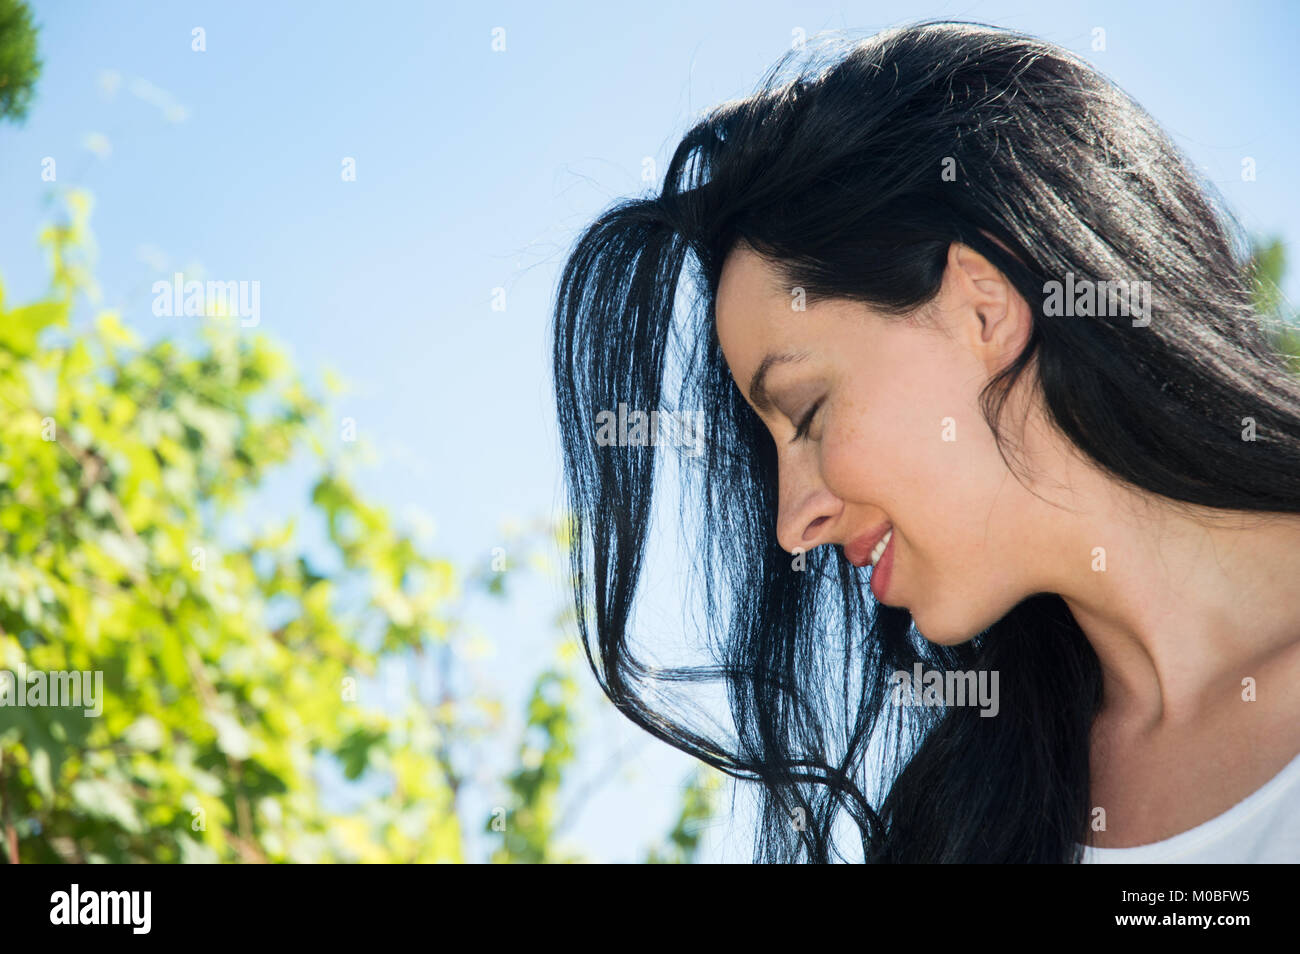 Portrait de profil de jeune femme aux cheveux noirs, copy space Banque D'Images